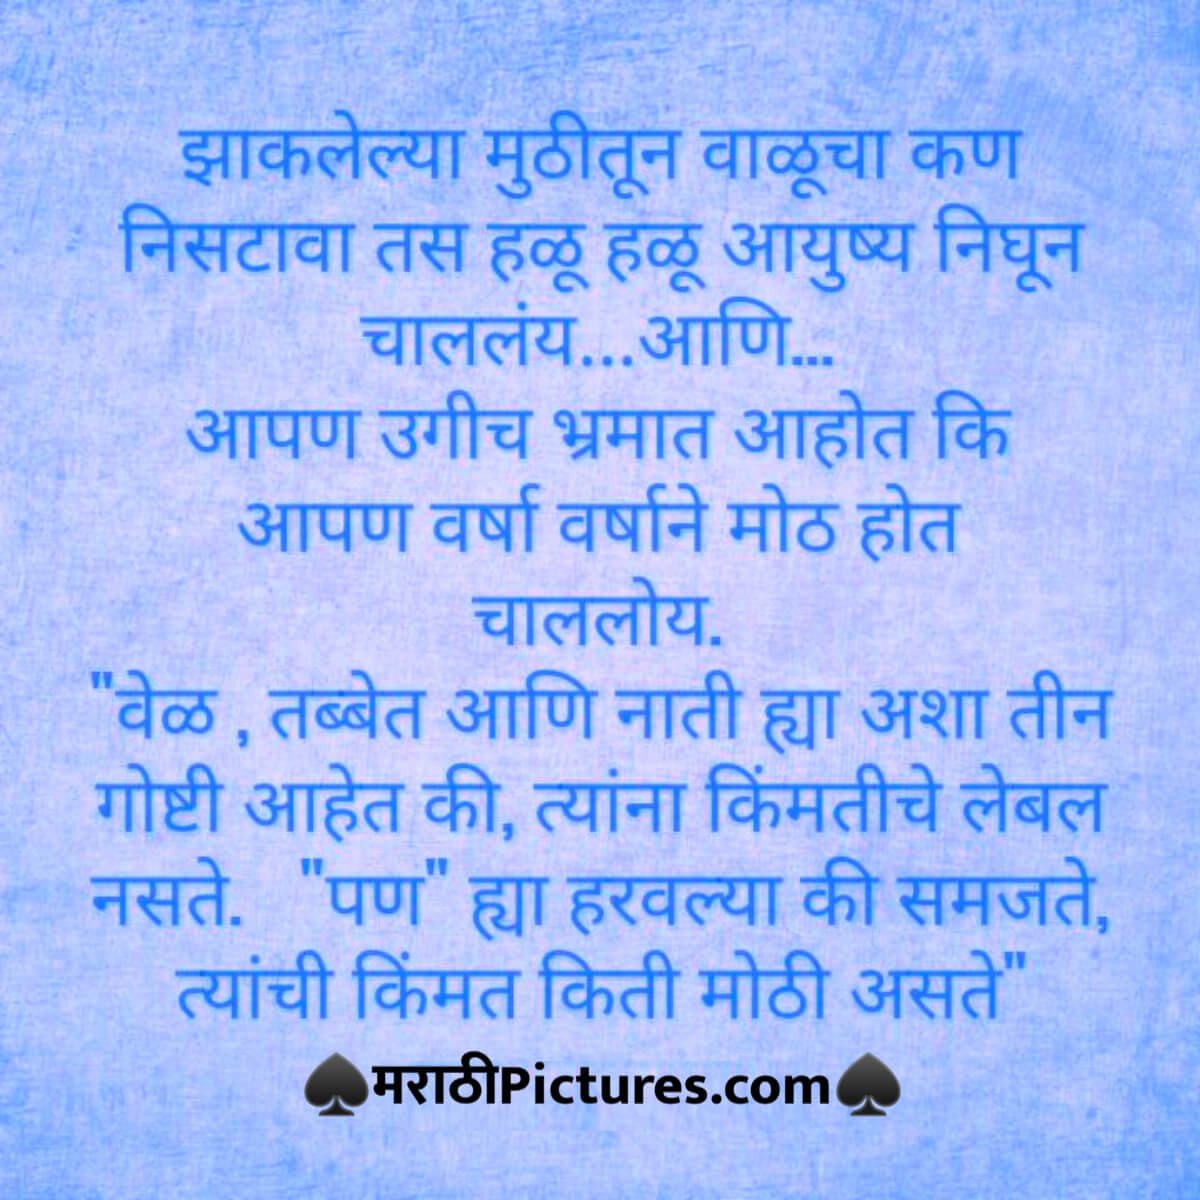 Best life quotes in marathi language